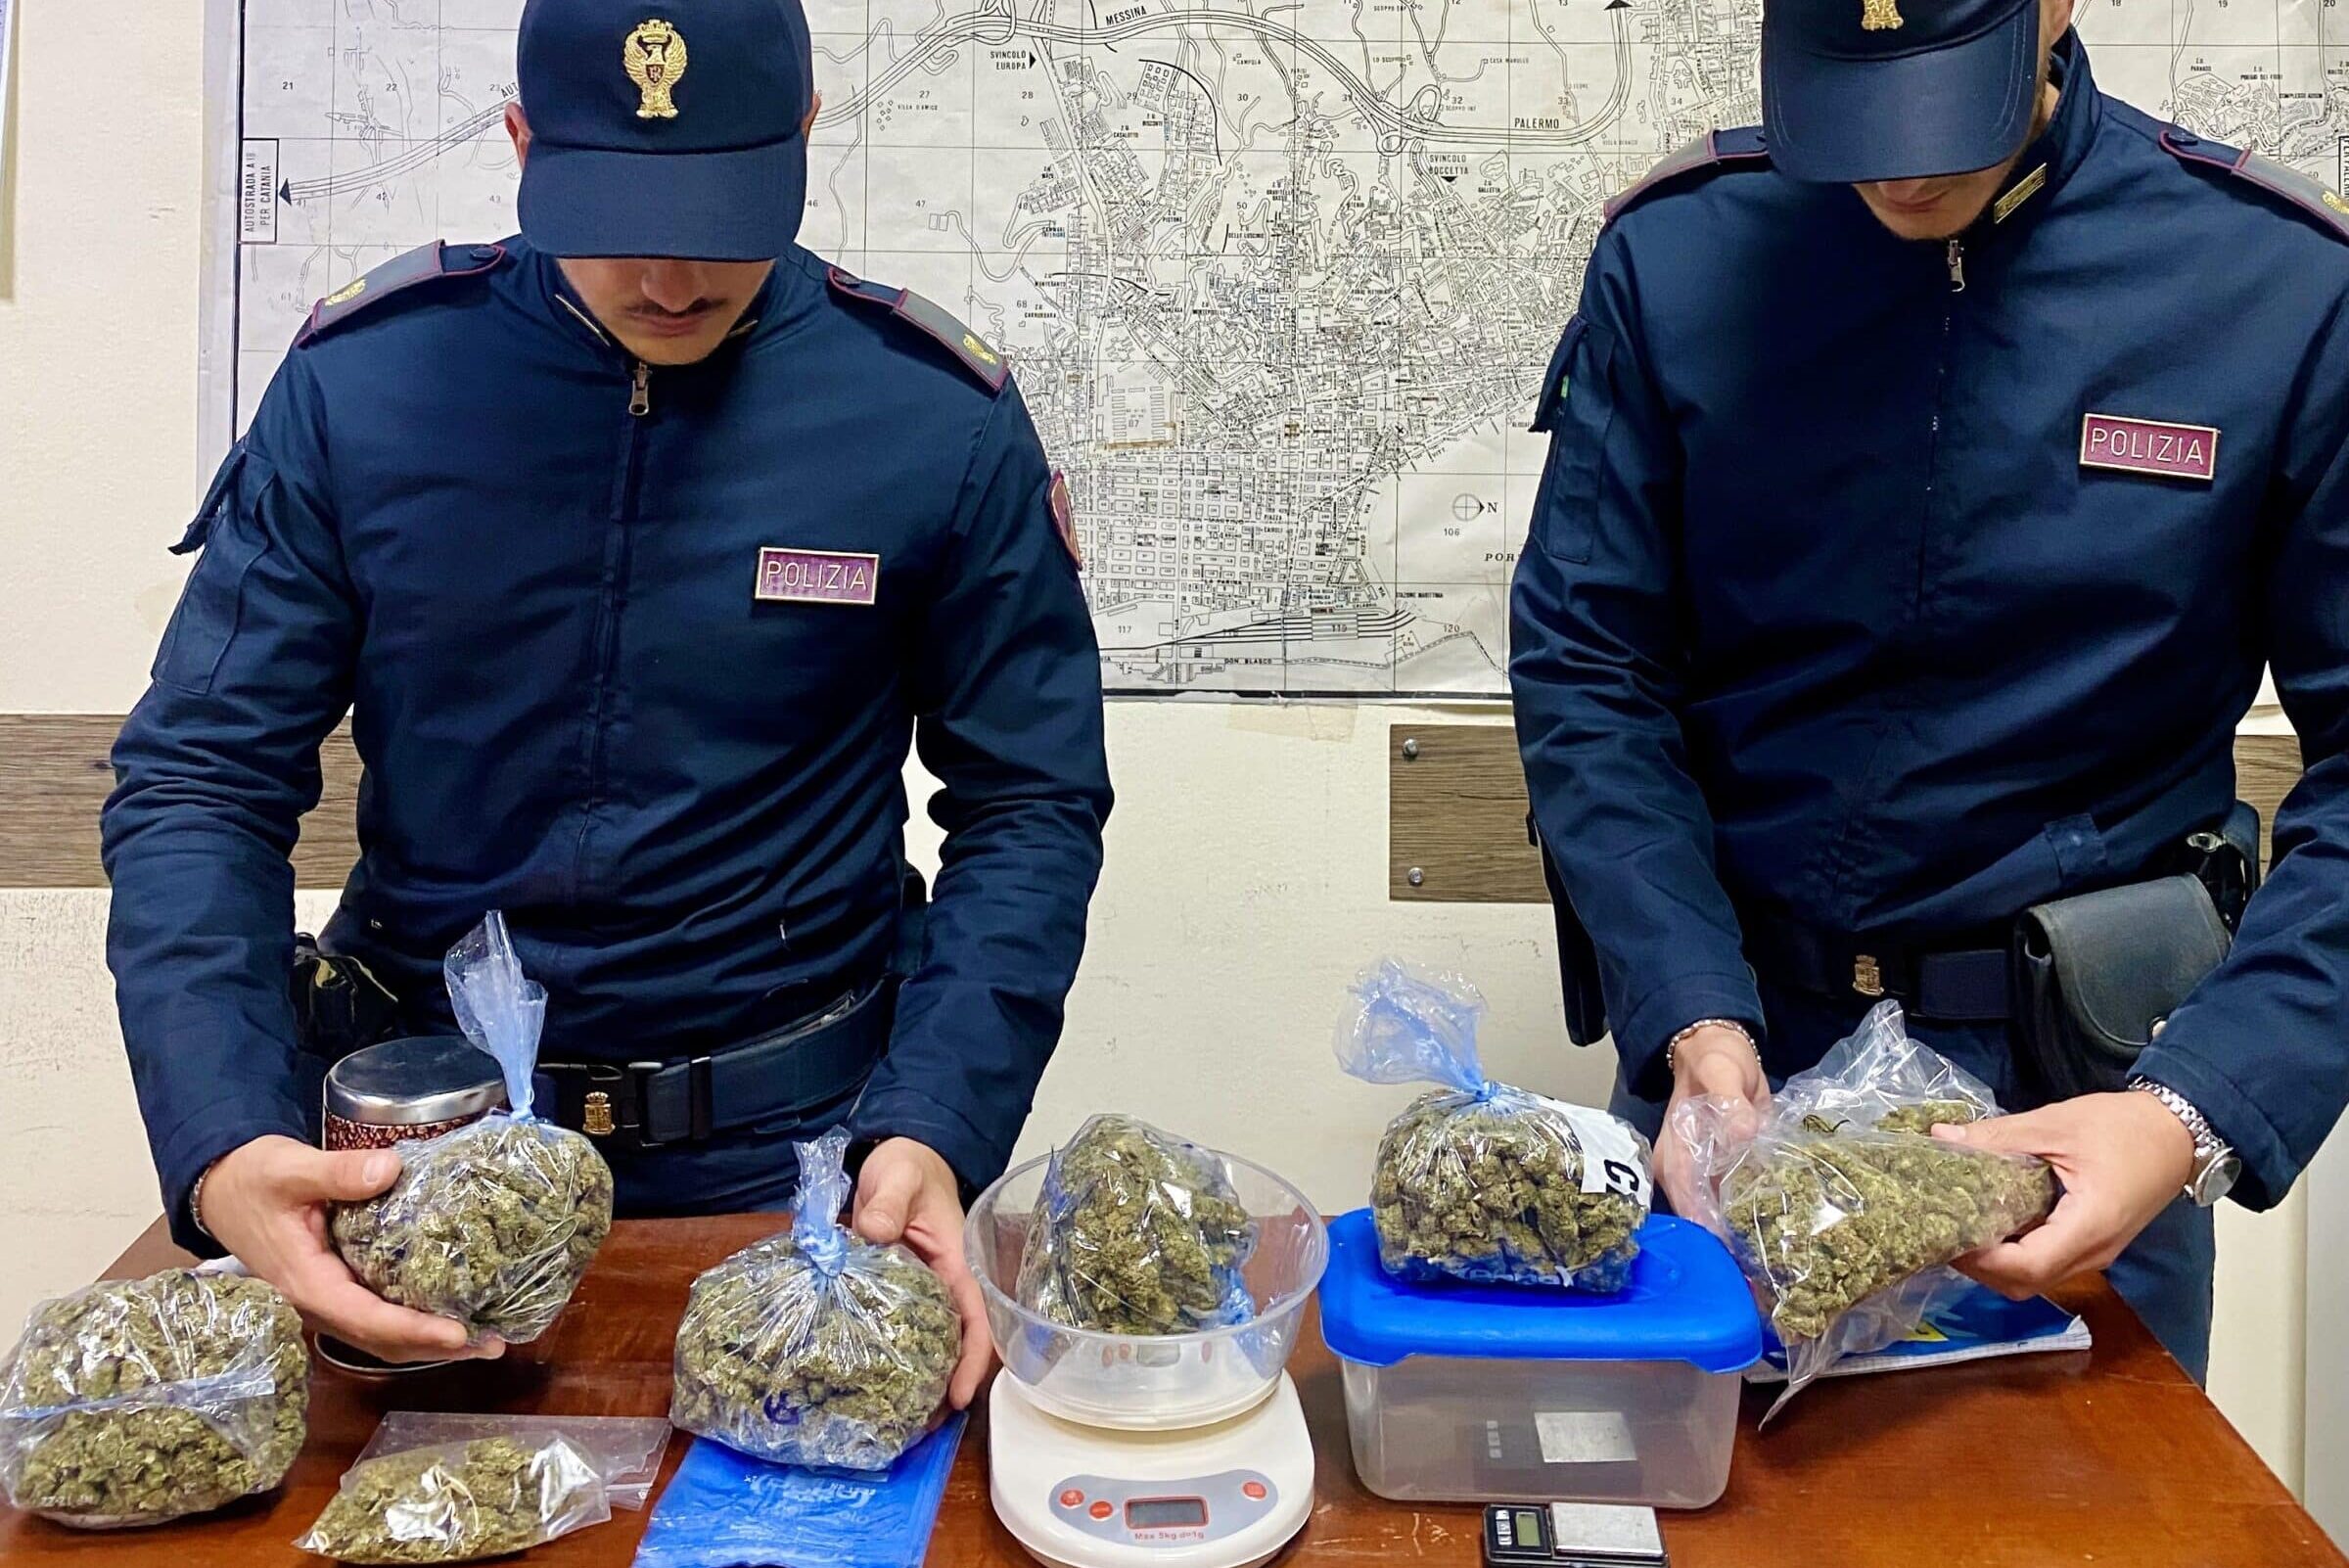 Marijuana in cantina, trovato e sequestrato più di mezzo chilo di droga